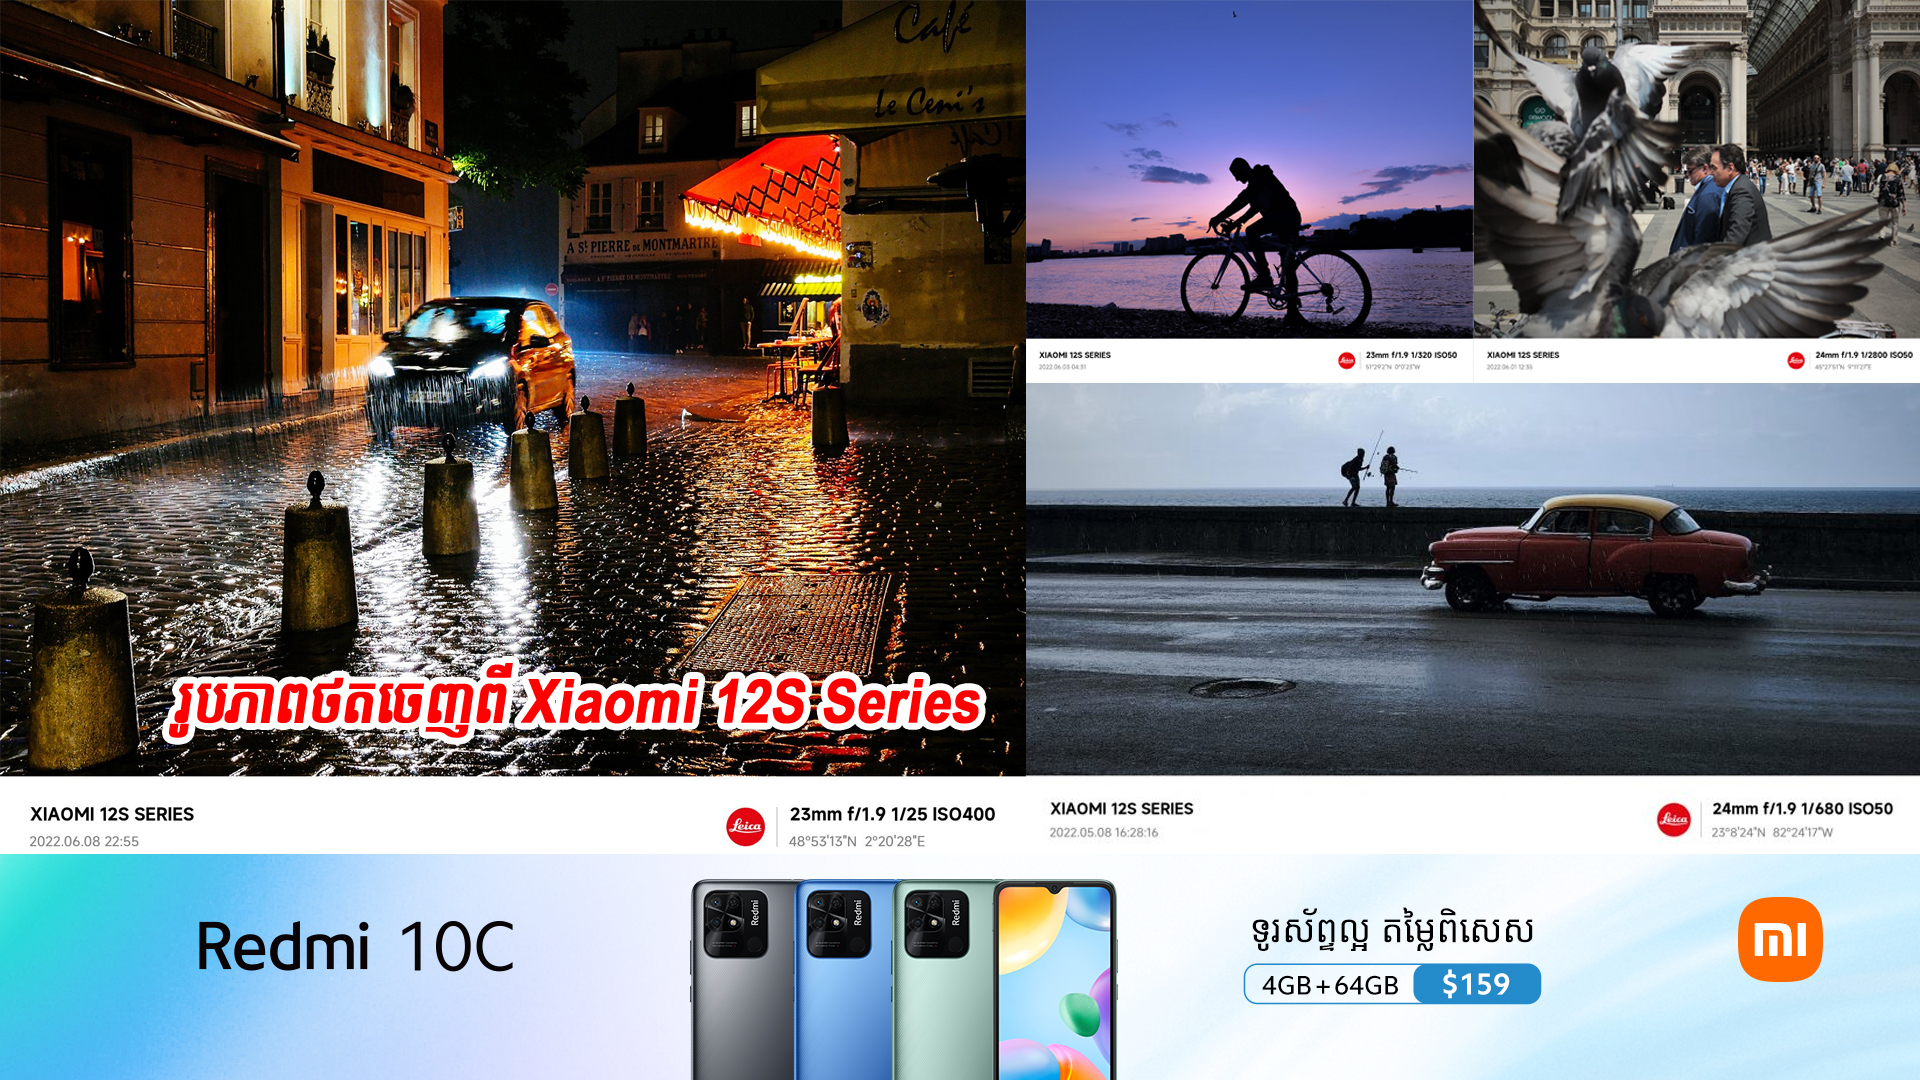 រូបភាពថ្មីៗ ថតចេញពី Xiaomi 12S series ដែលប្រើបច្ចេកវិទ្យា Leica ត្រូវគេទម្លាយចេញហើយ មើលទៅពិតជាទាក់ទាញខ្លាំងមែនទែន‍!